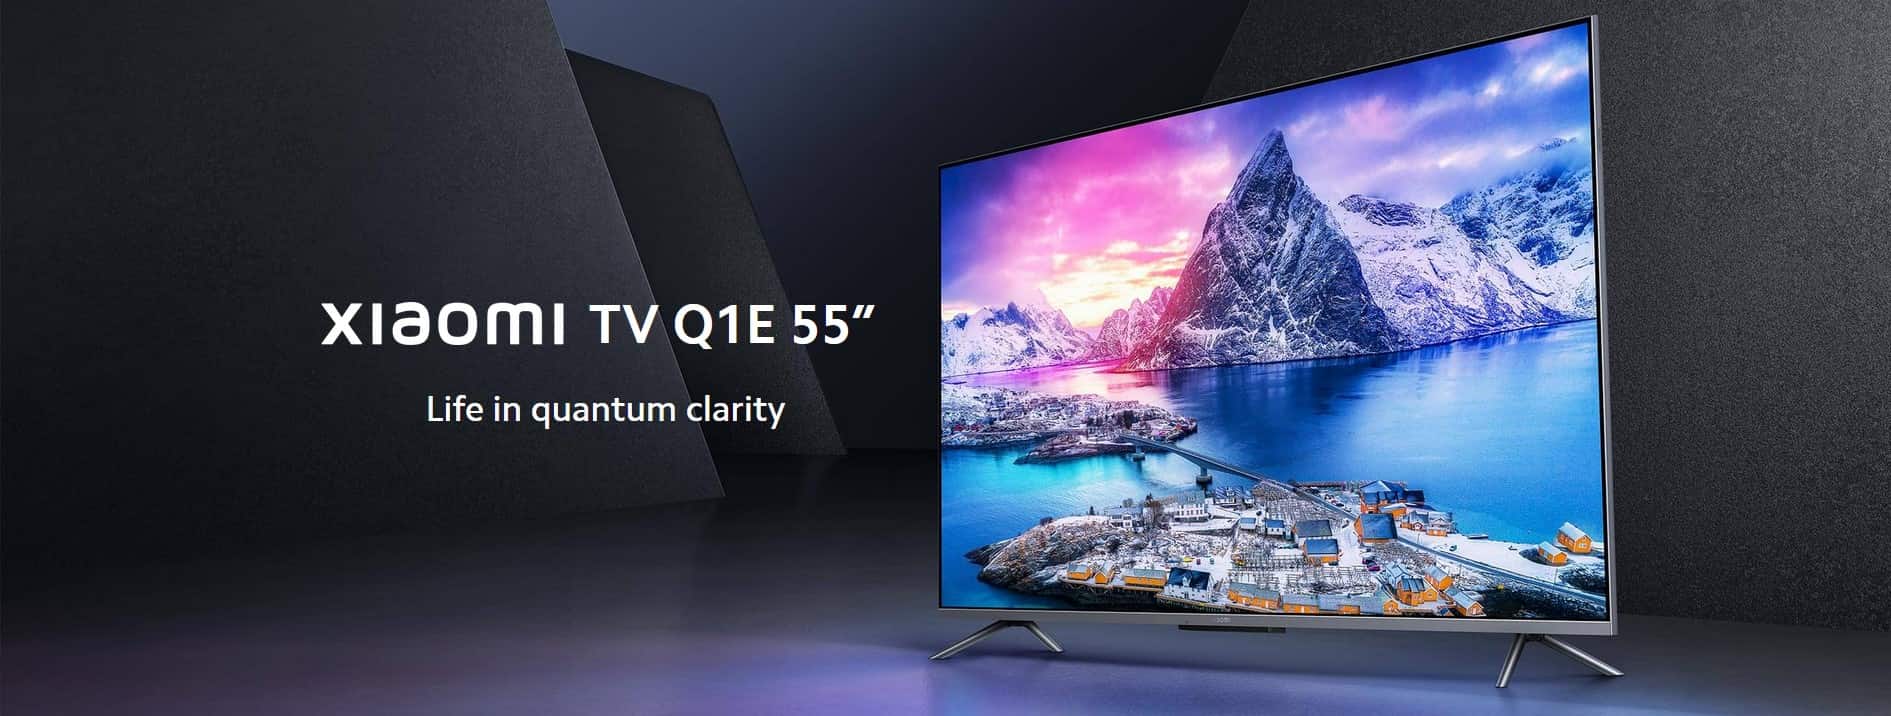 تلویزیون 55 اینچ شیائومی مدل 55q1e